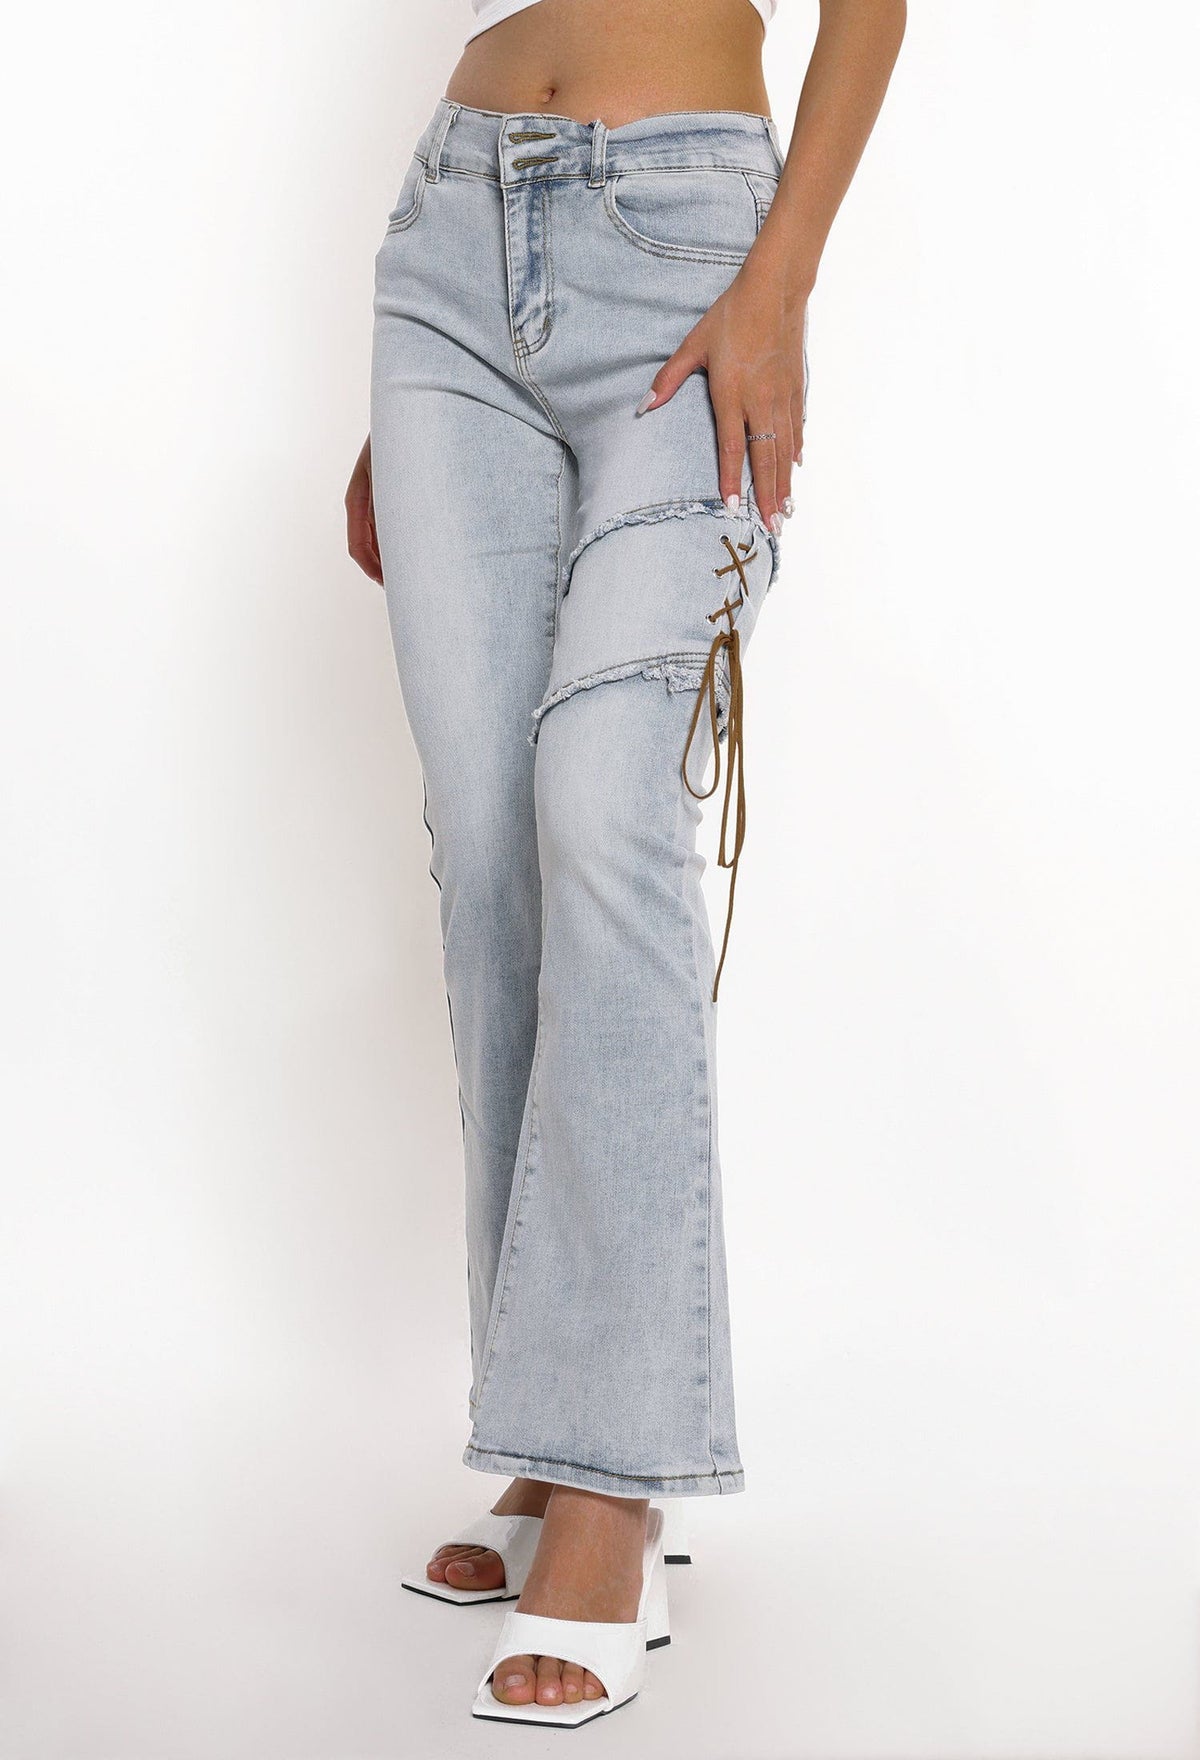 Eprezzy® - Irregular Strap Flared Jeans Streetwear Fashion - eprezzy.com